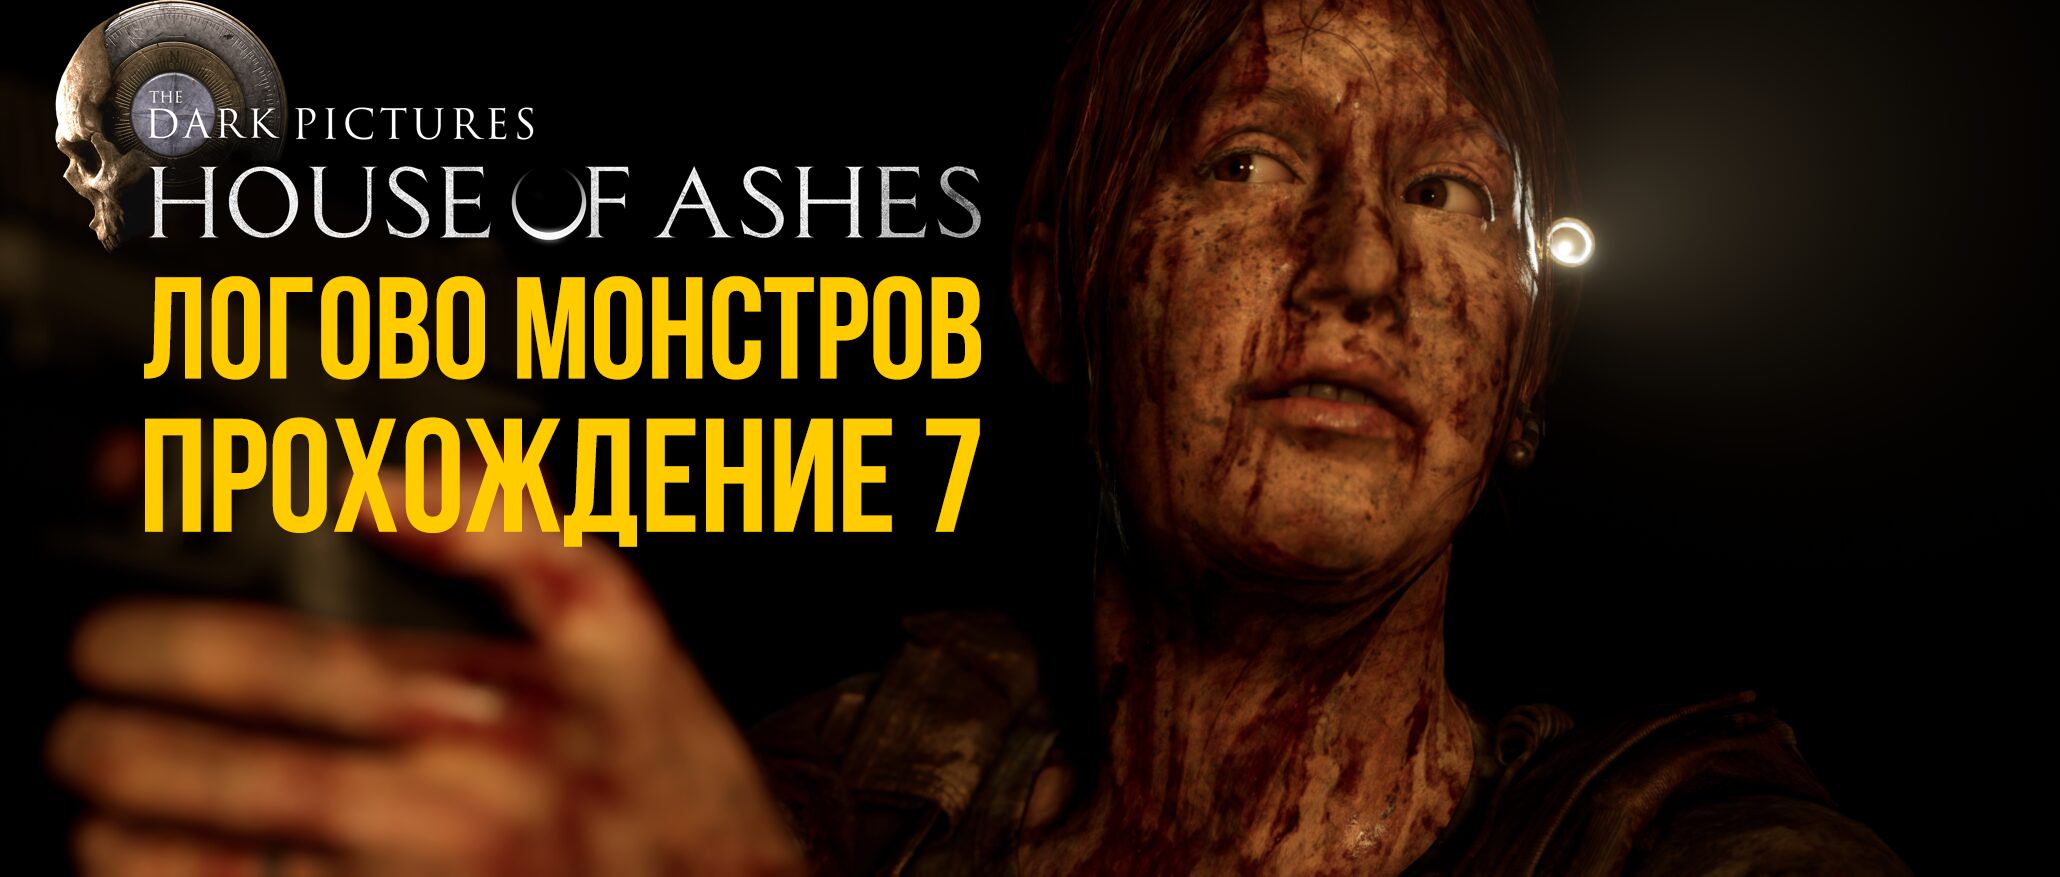 House of Ashes – Логово монстров. Прохождение 7